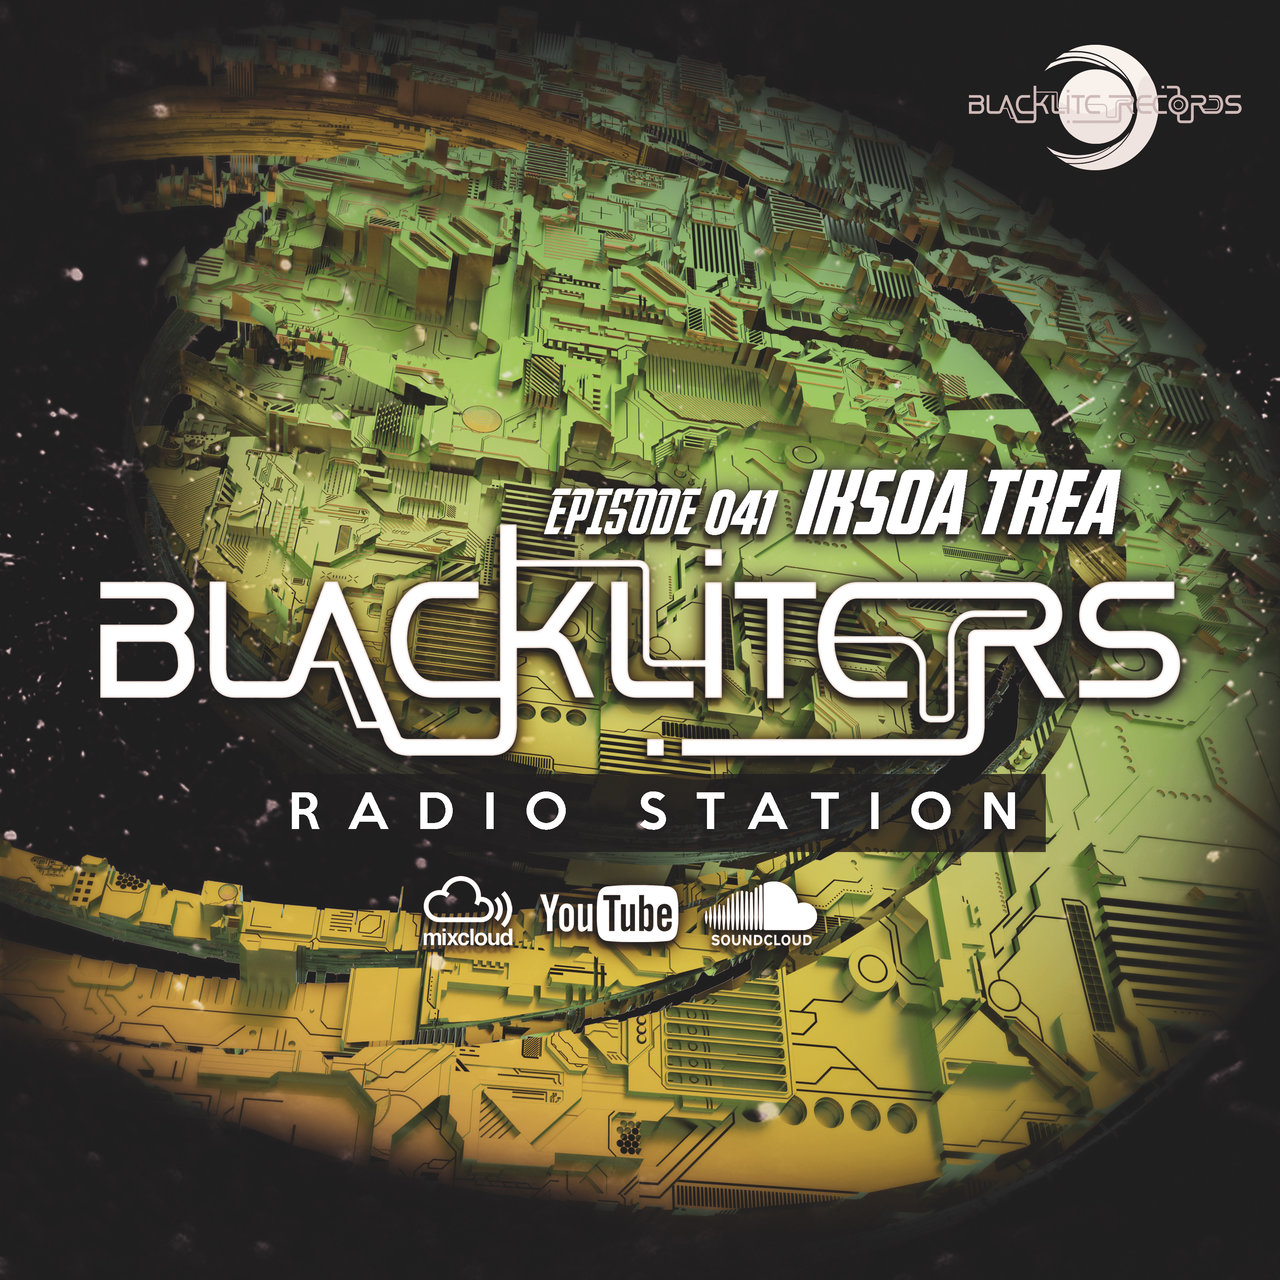 Blackliters Radio #041 "IKSOATREA" [Psychedelic Trance Radio]